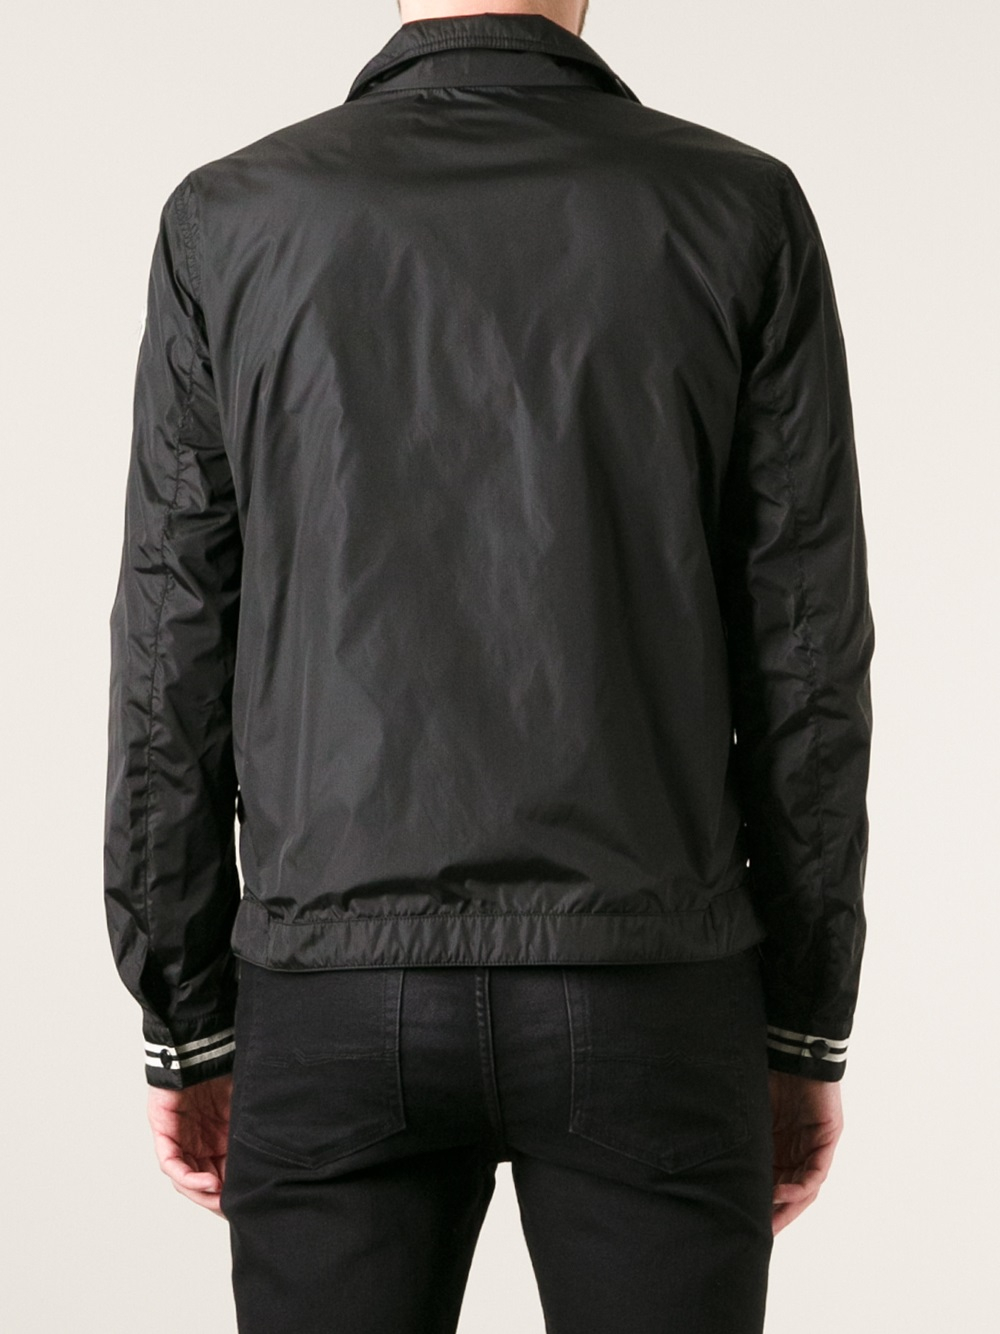 Moncler Aurelien Reversible Jacket in Black for Men - Lyst